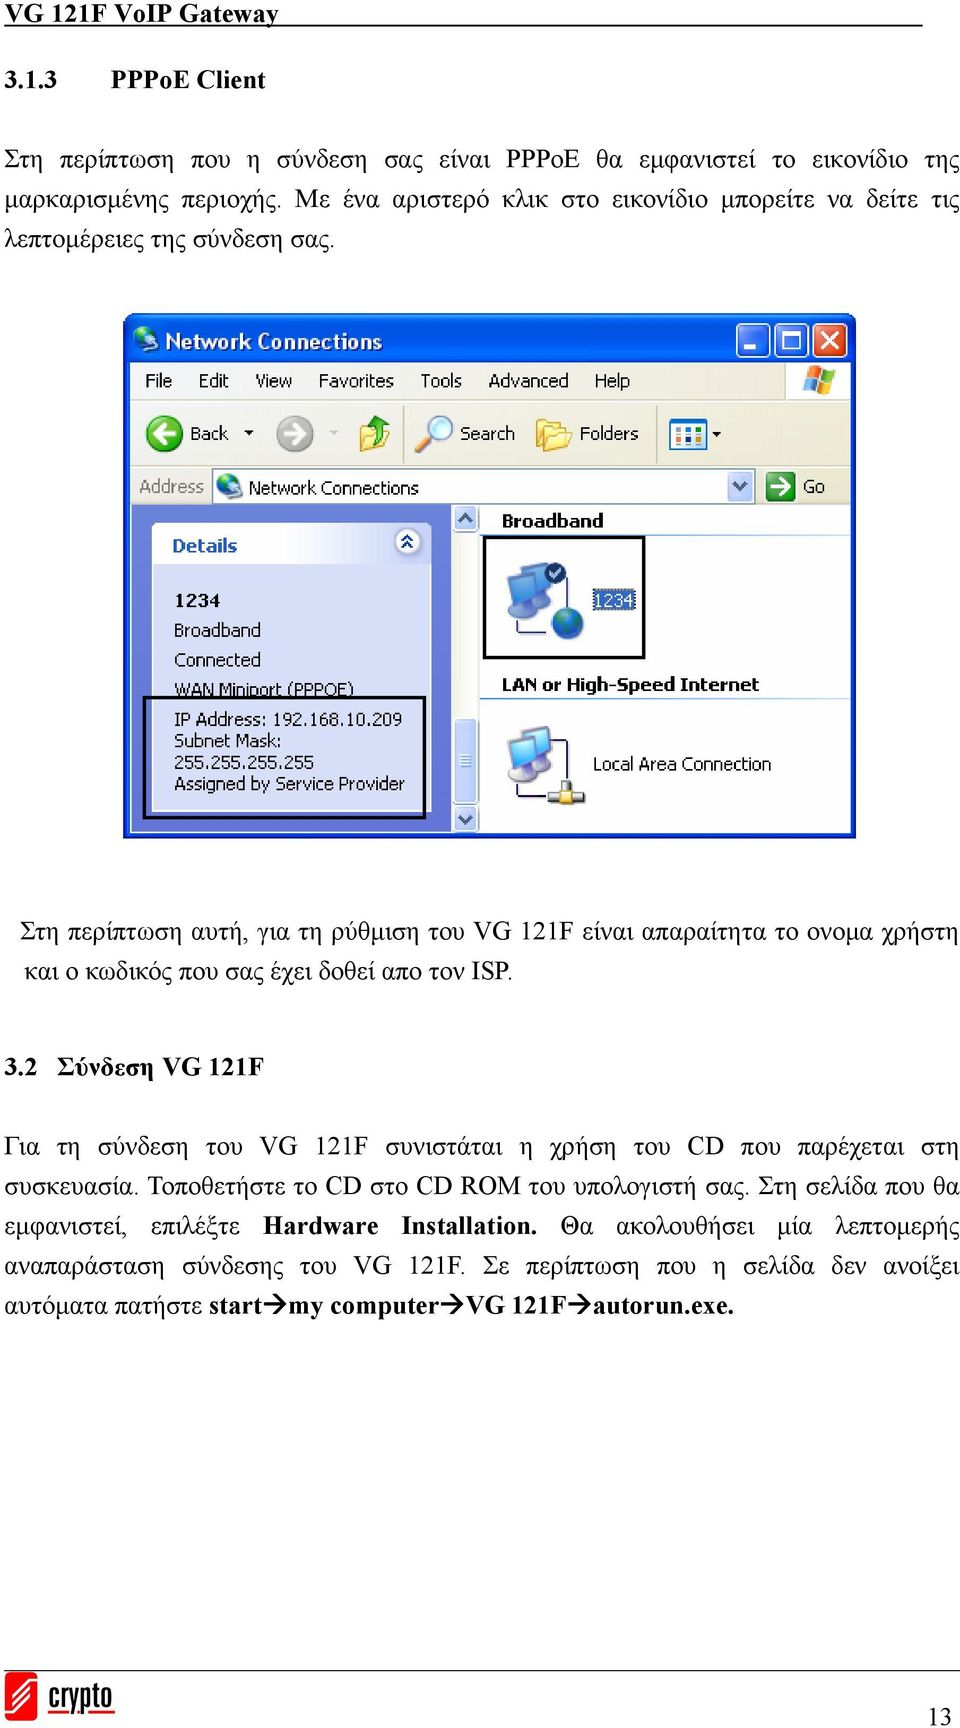 Στη περίπτωση αυτή, για τη ρύθμιση του VG 121F είναι απαραίτητα το ονομα χρήστη και ο κωδικός που σας έχει δοθεί απο τον ISP. 3.